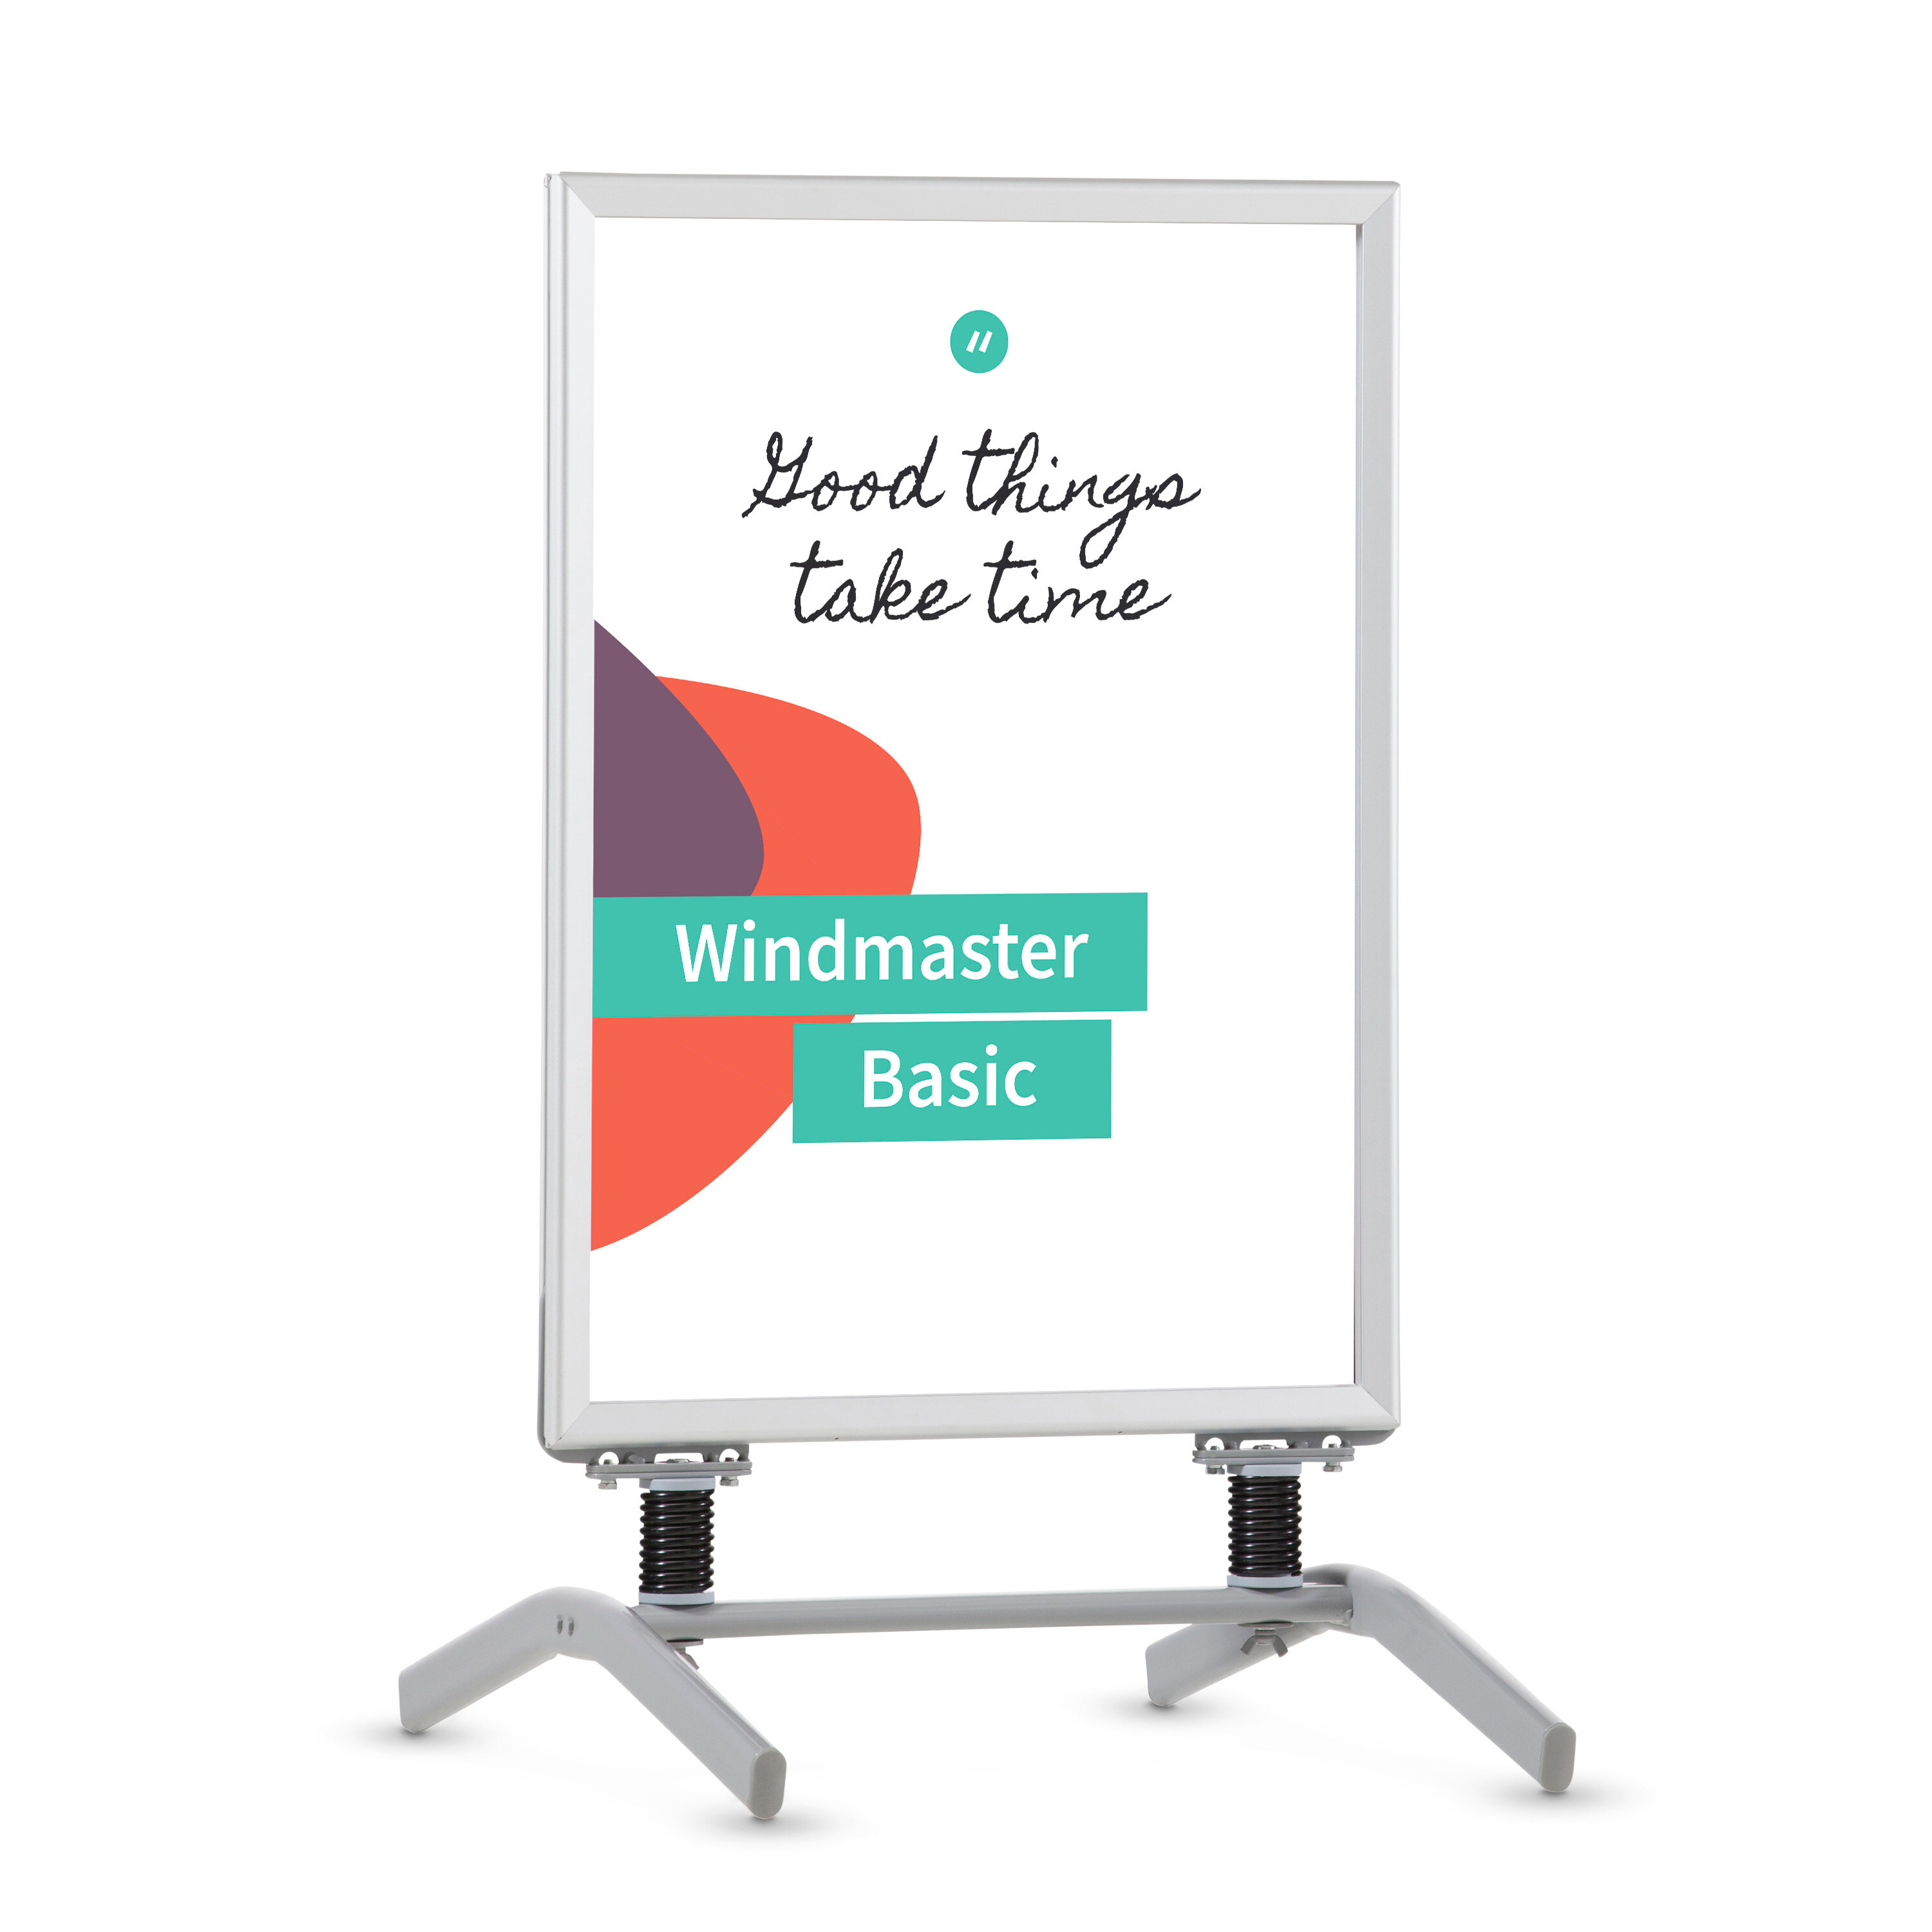 Pavement Board Windmaster Basic